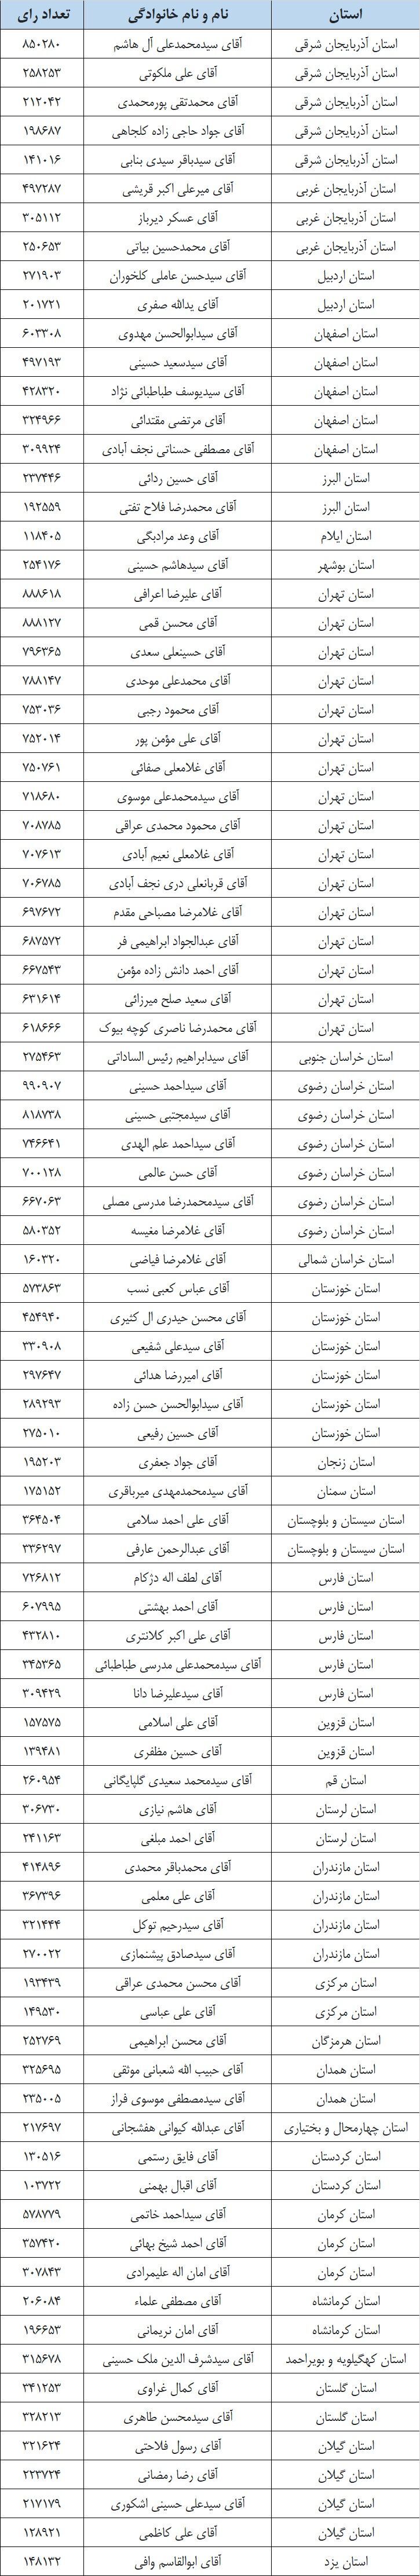 نتایج نهایی انتخابات ششمین دوره مجلس خبرگان رهبری